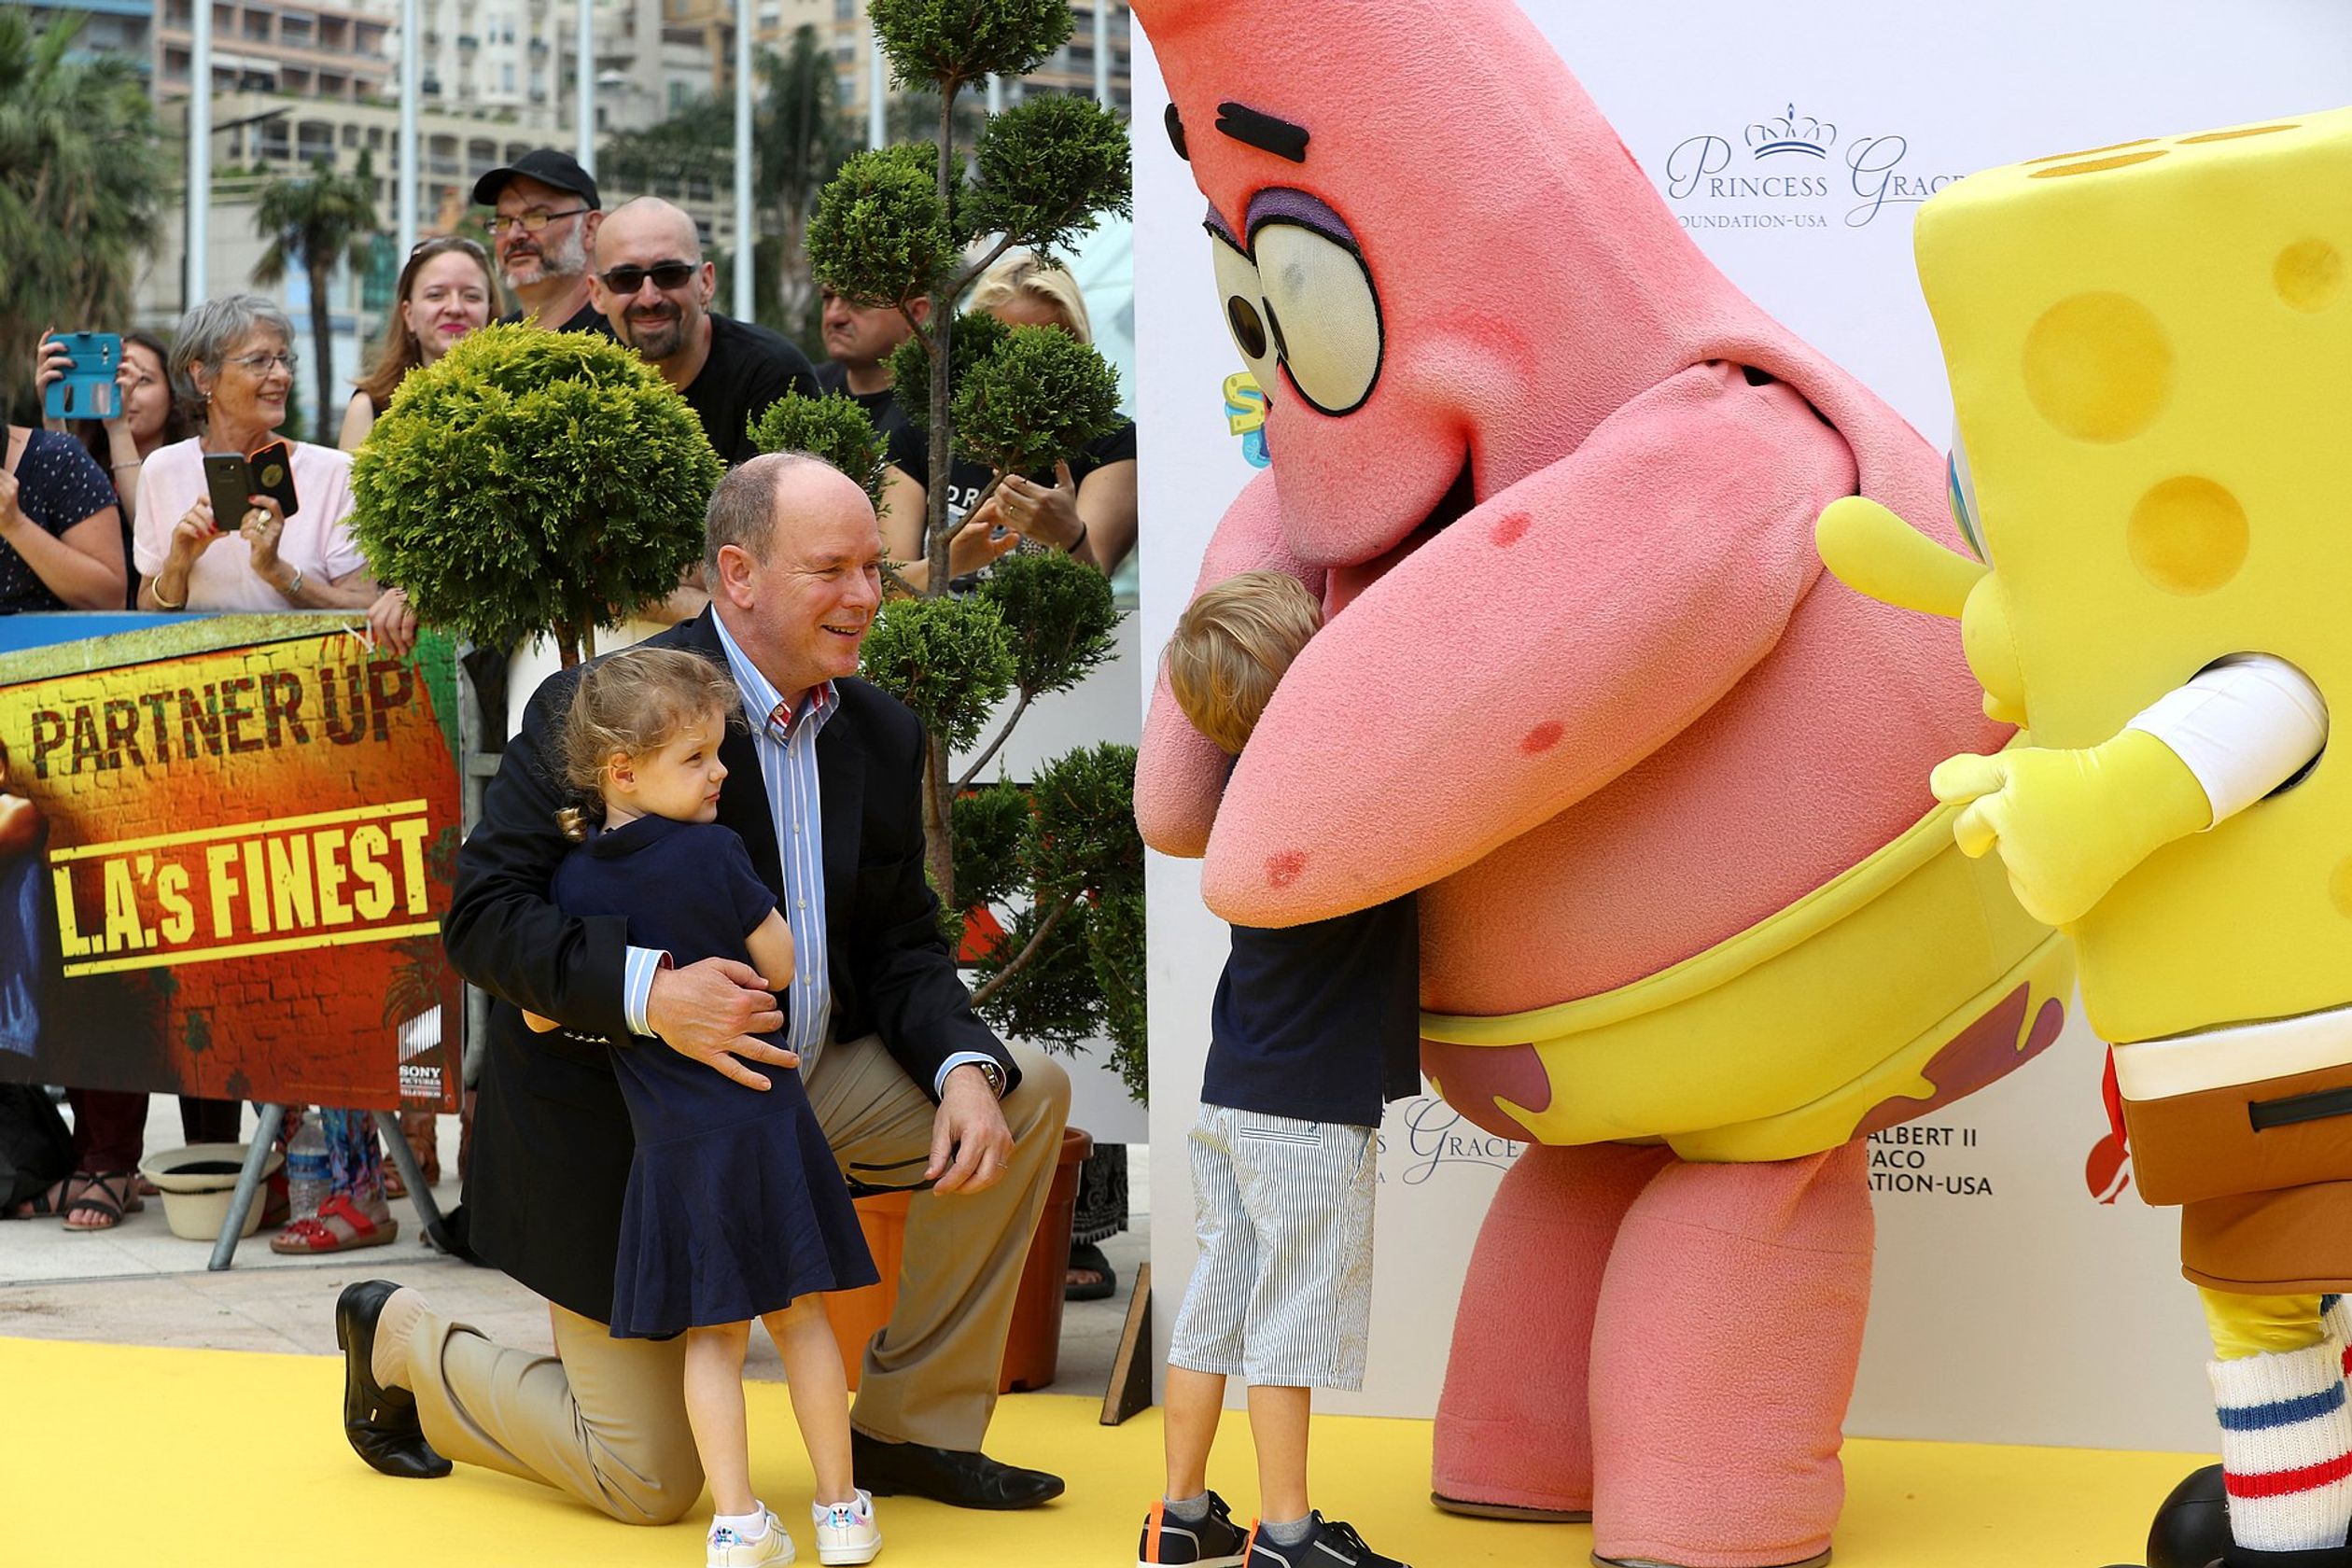 Jacques en Gabriella knuffelen personage Patrick uit Spongebob tijdens het televisiefestival van